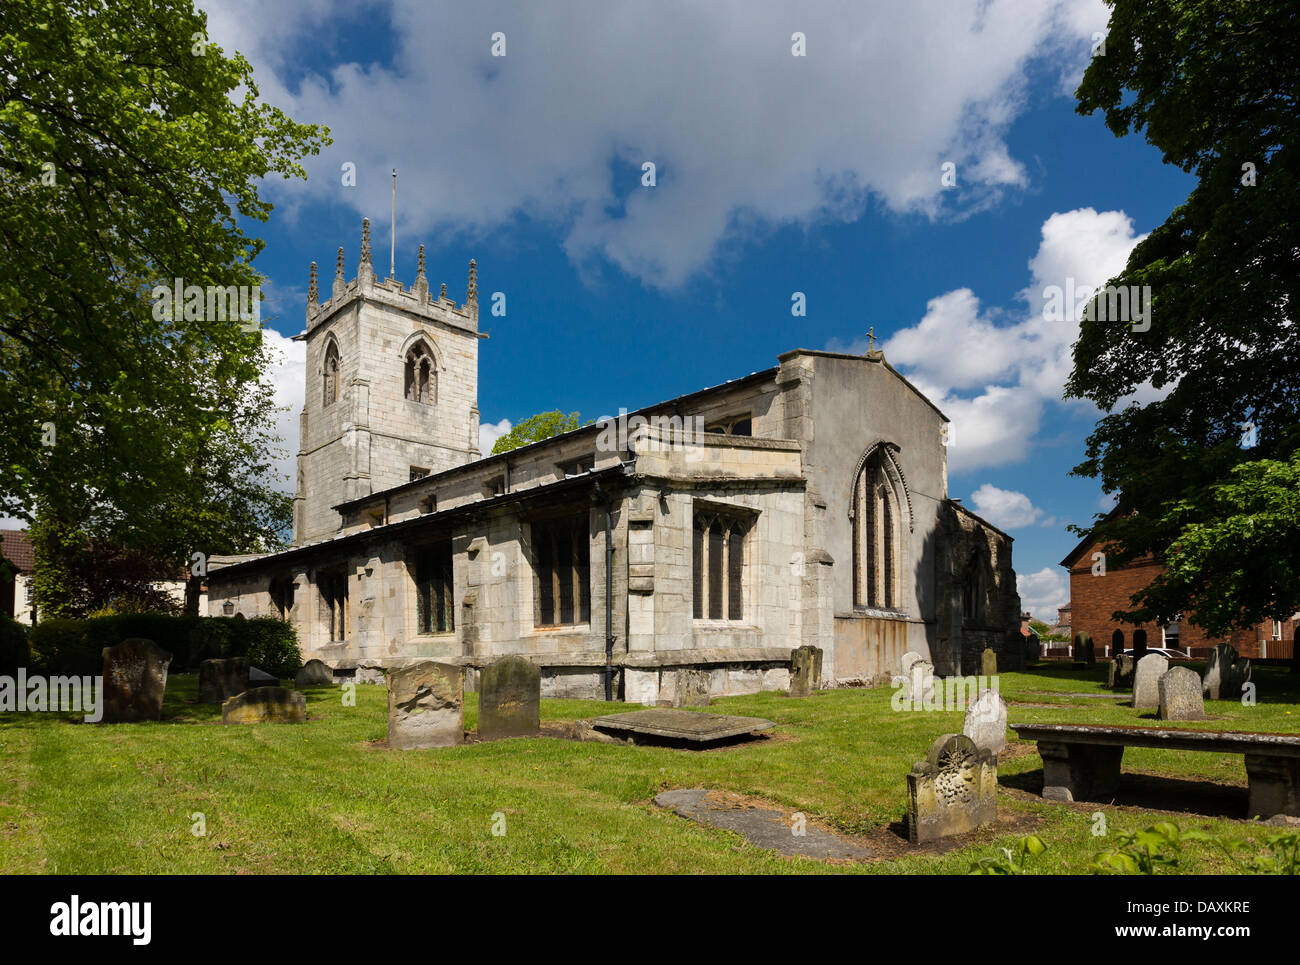 Die Pfarrkirche des Heiligen Nikolaus in playbunnydiamants, South Yorkshire. Die Kirche wurde im Jahre 1190 gegründet. Stockfoto